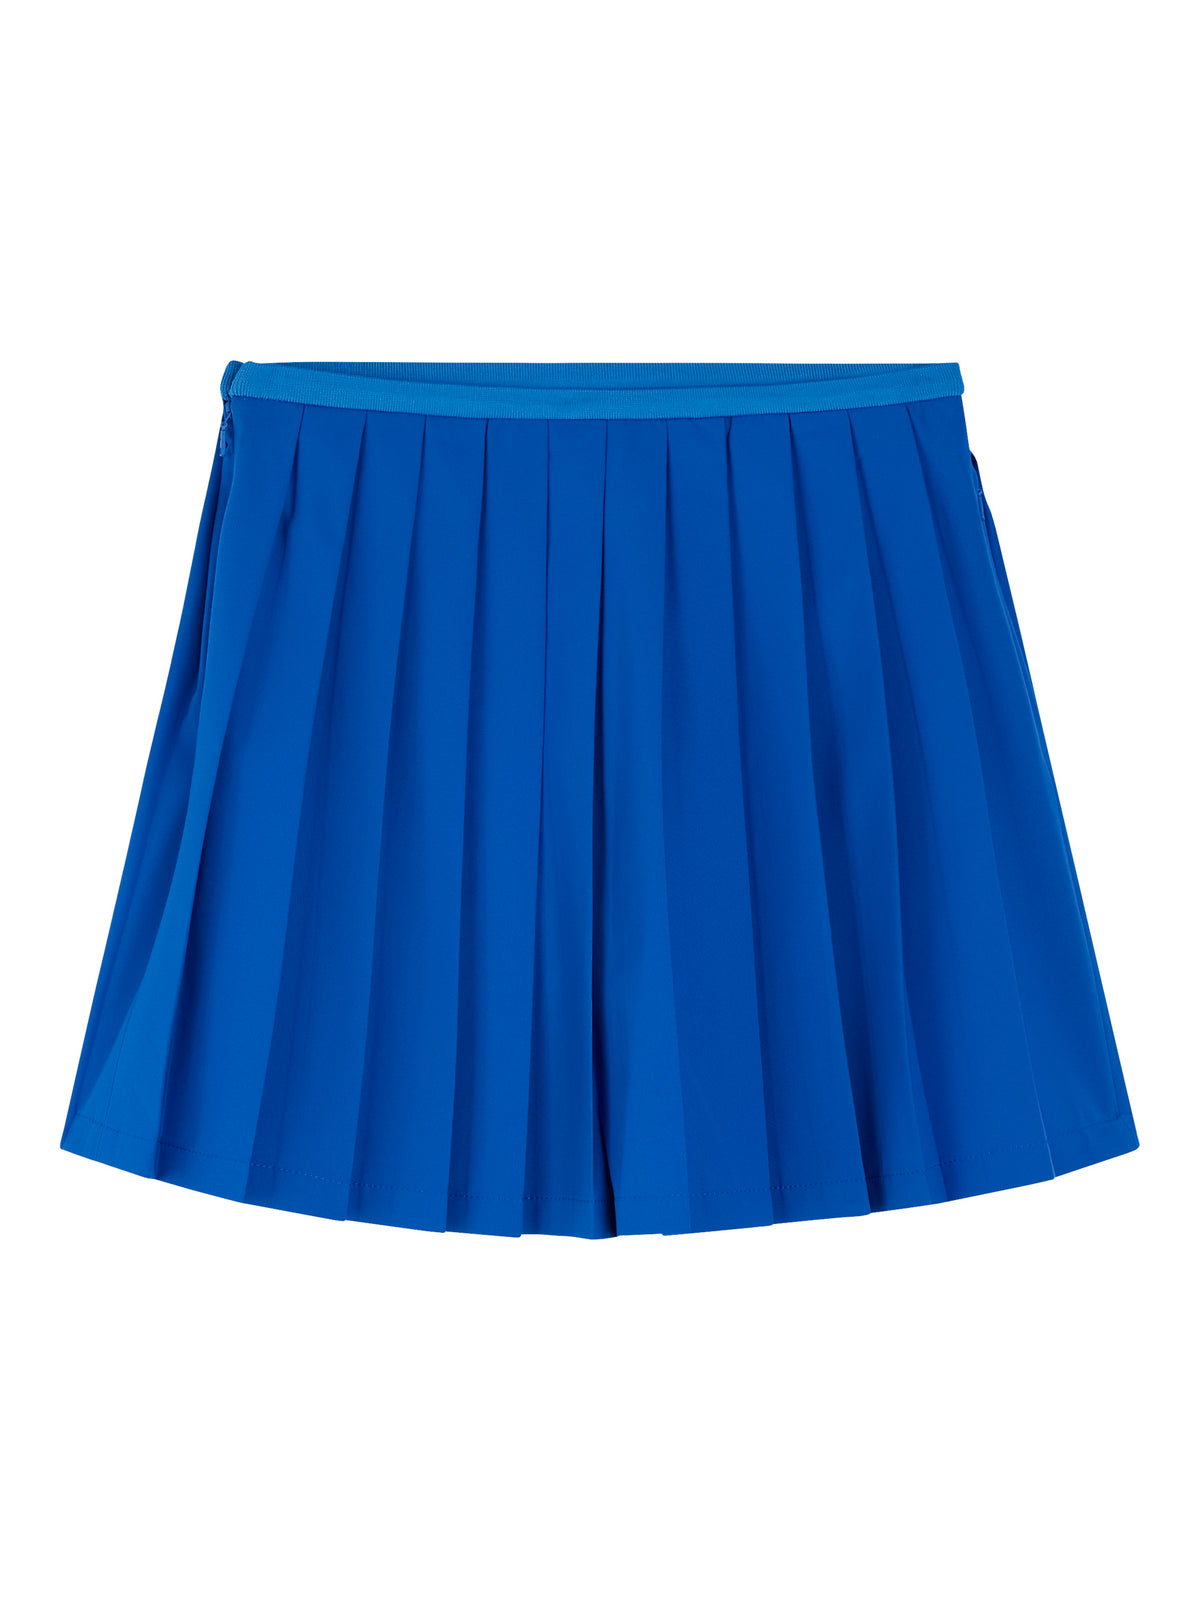 Sierra Pleat Skirt / Lapis Blue